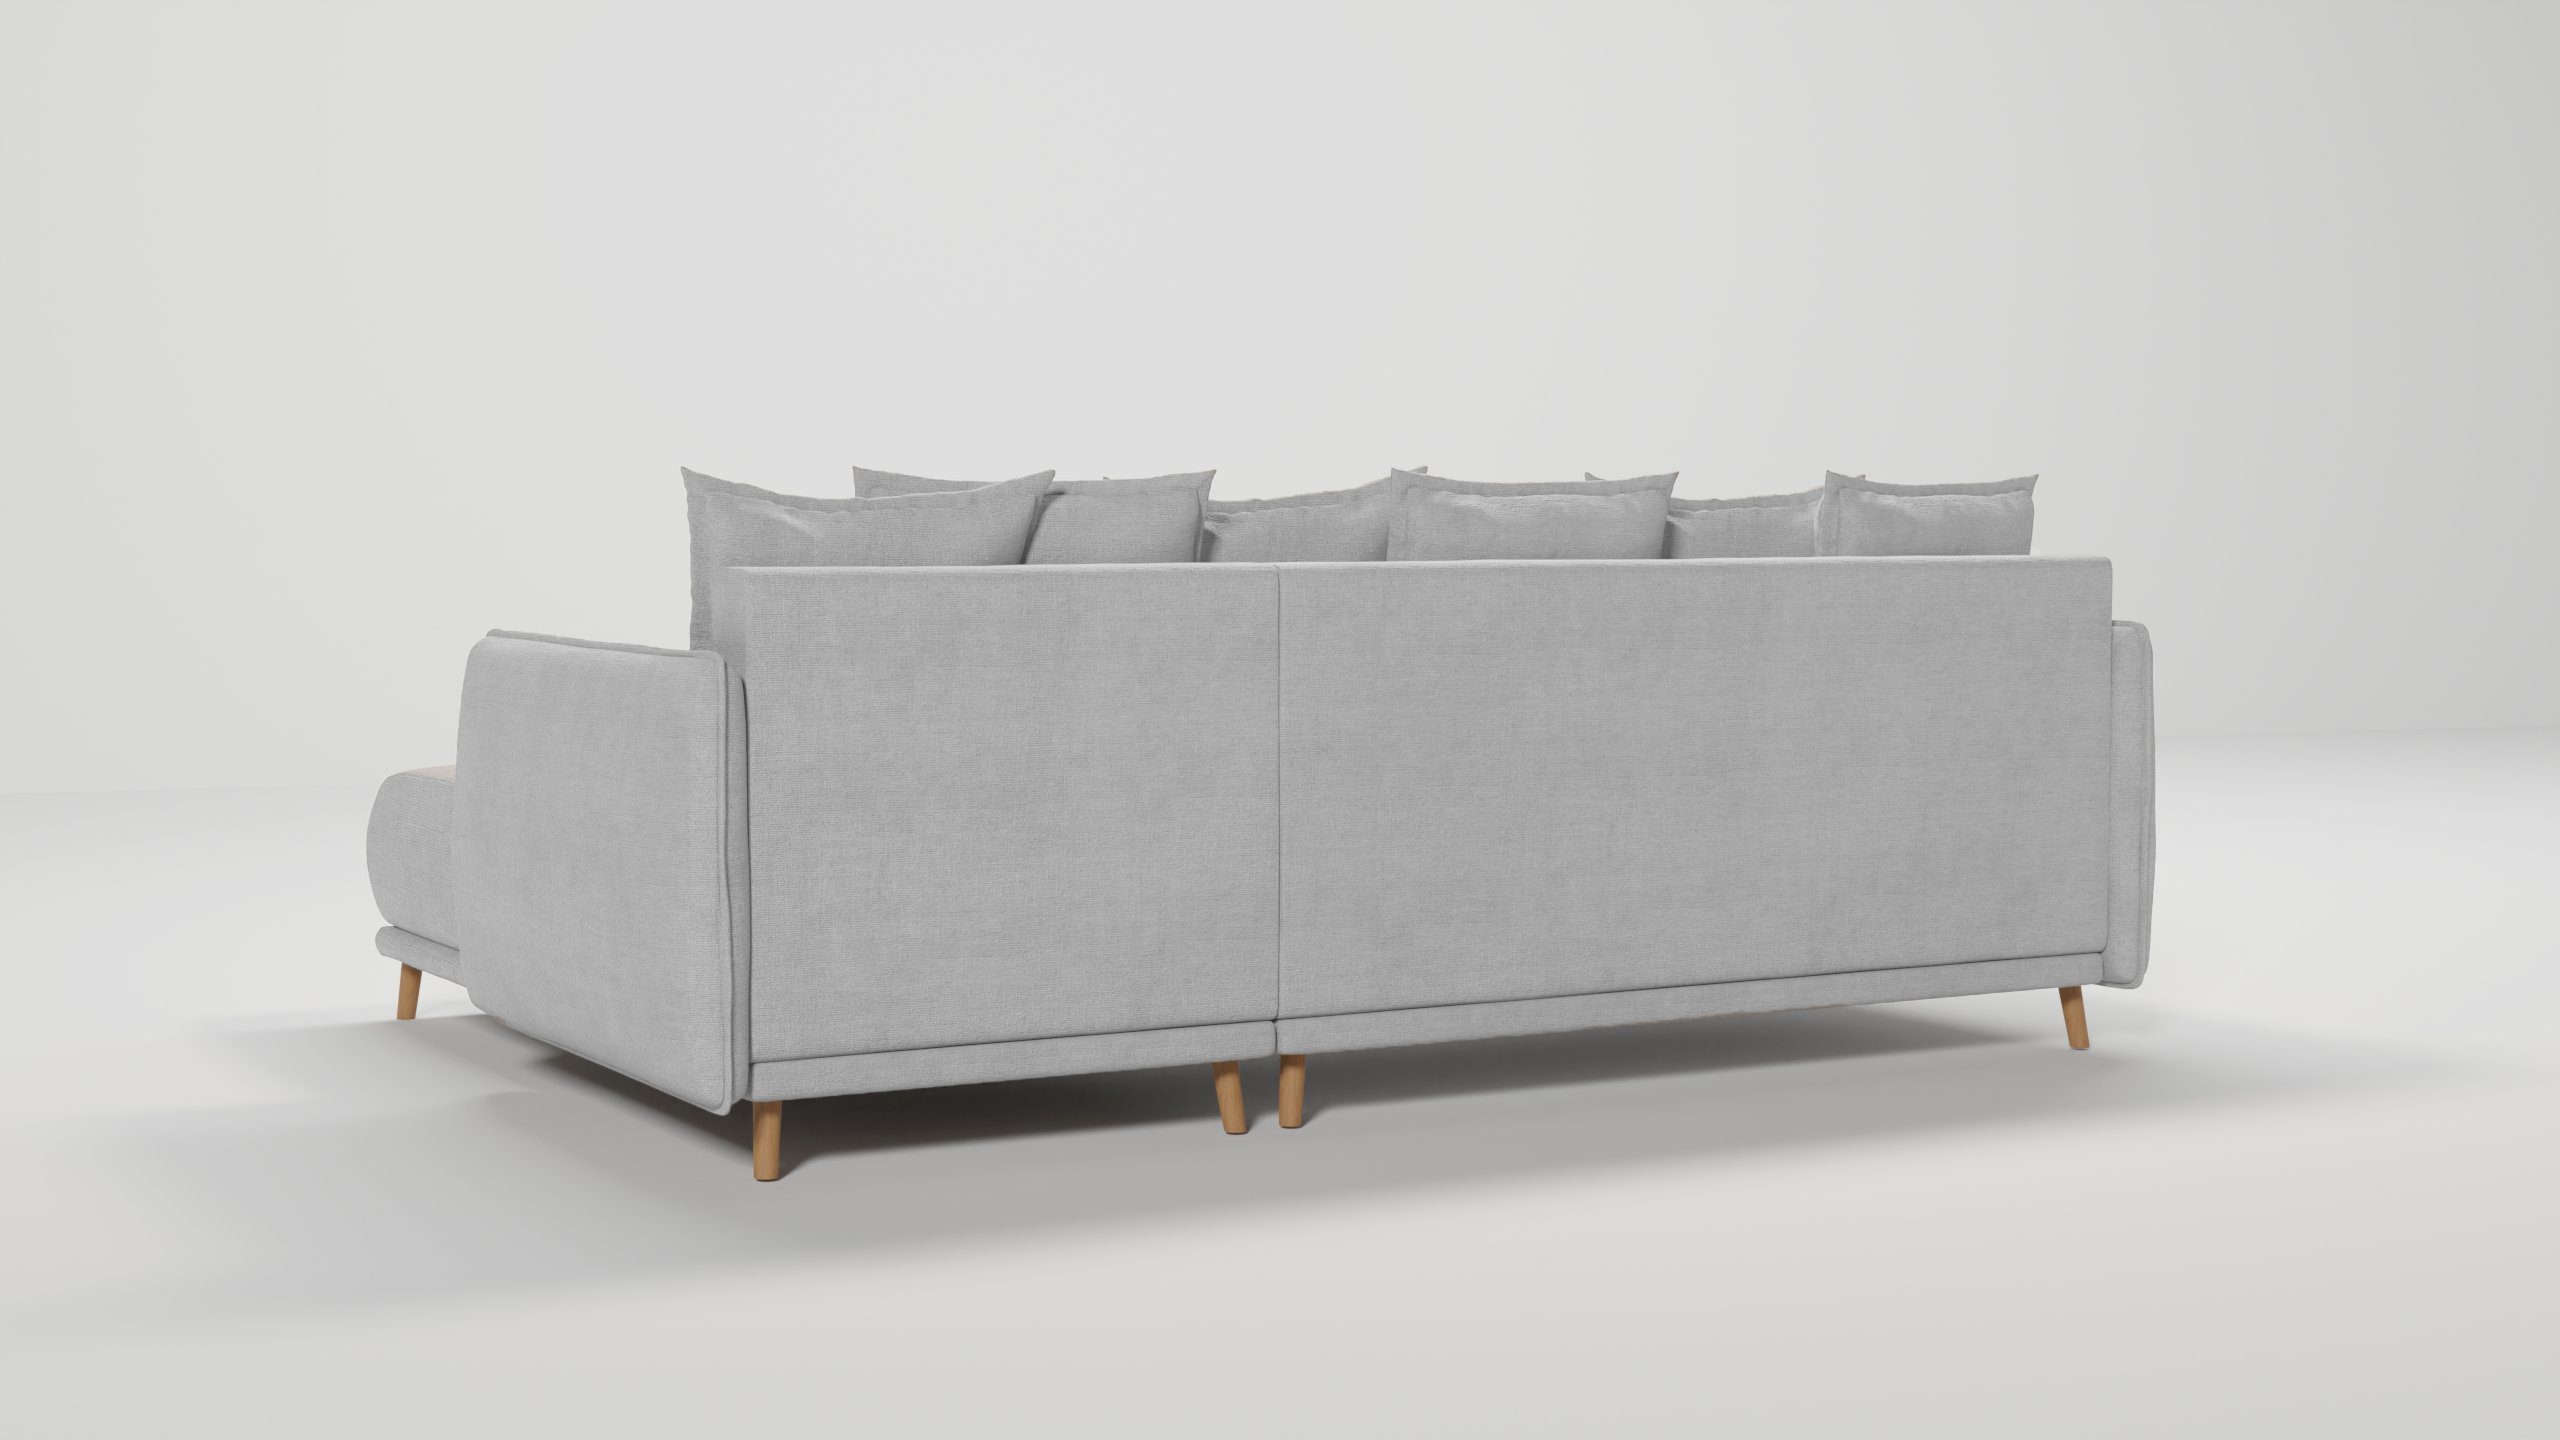 S-Style Möbel Lina links im Ecksofa rechts Design, und mit Silber Bettfunktion Wellenfederung mane bestellbar, Bettkasten skandinavischen oder mit